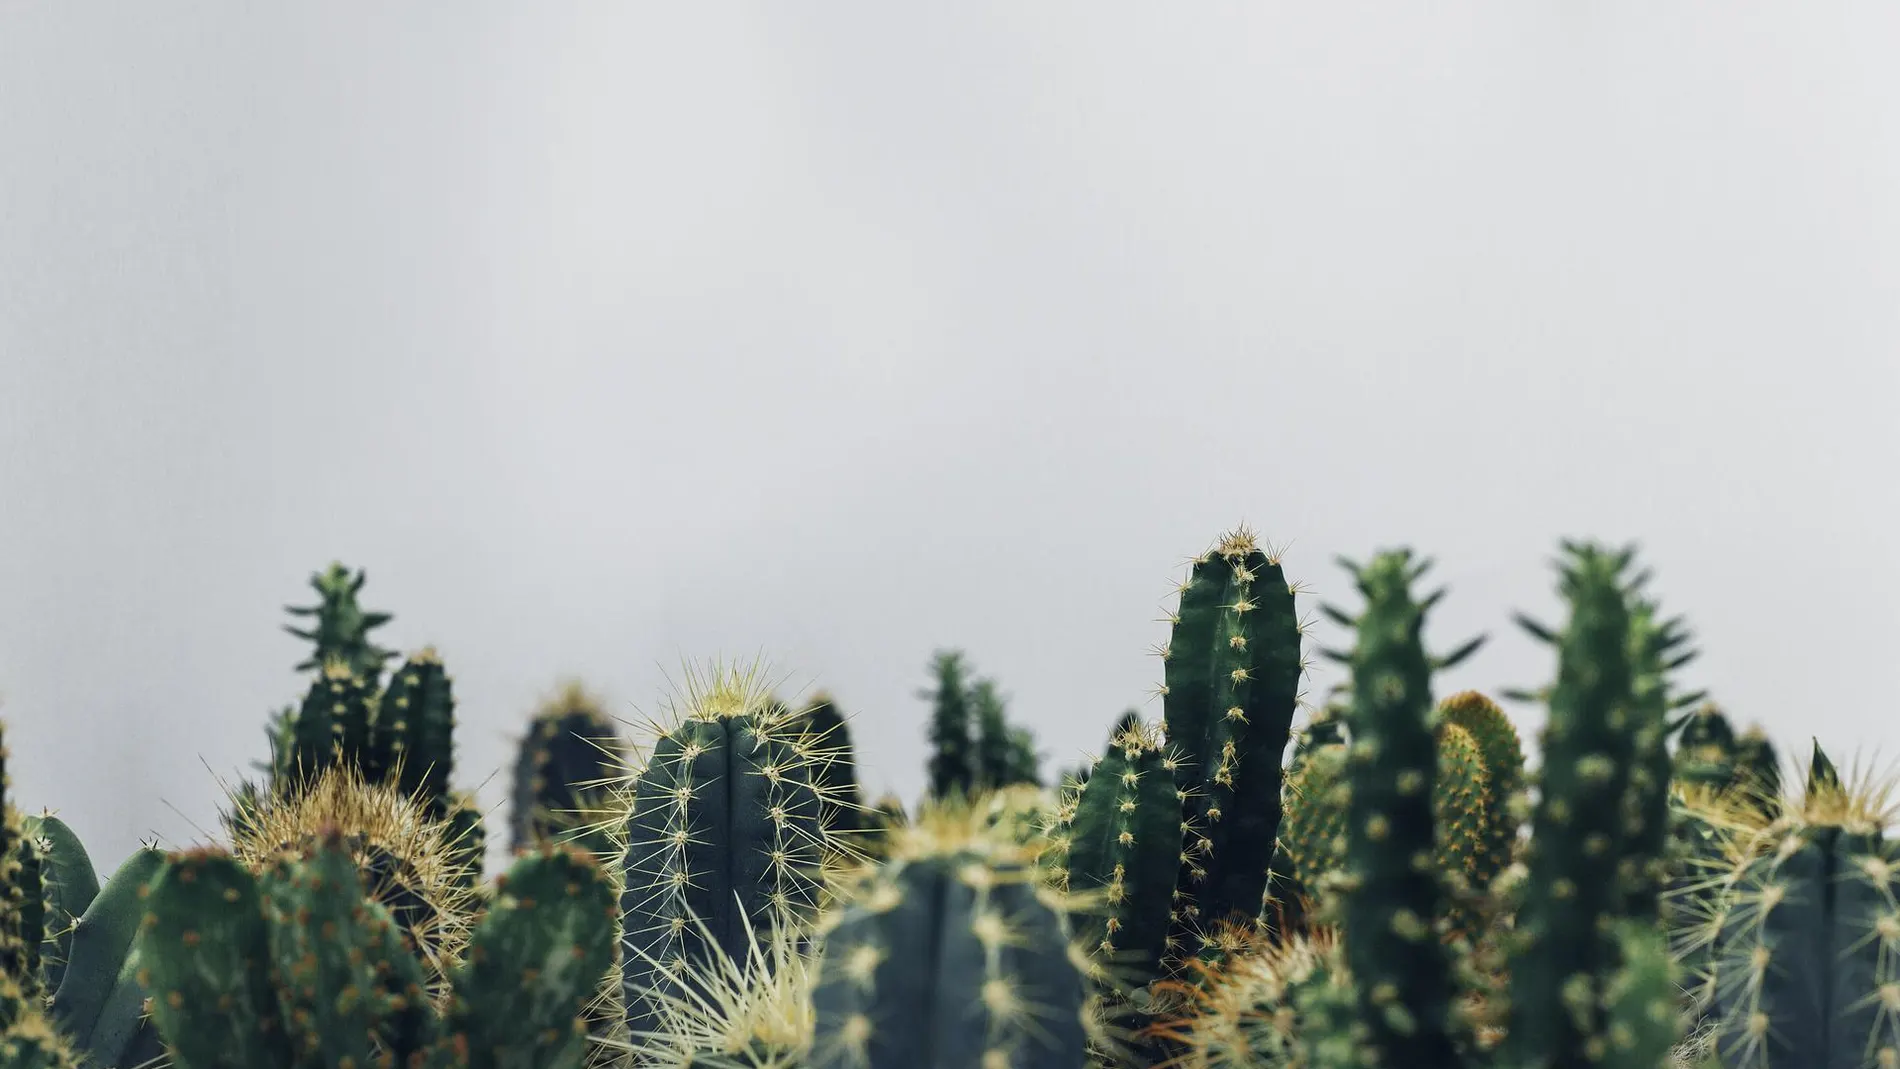 Diferentes especies de cactus en los que se observan lass características principales como sus espinas.